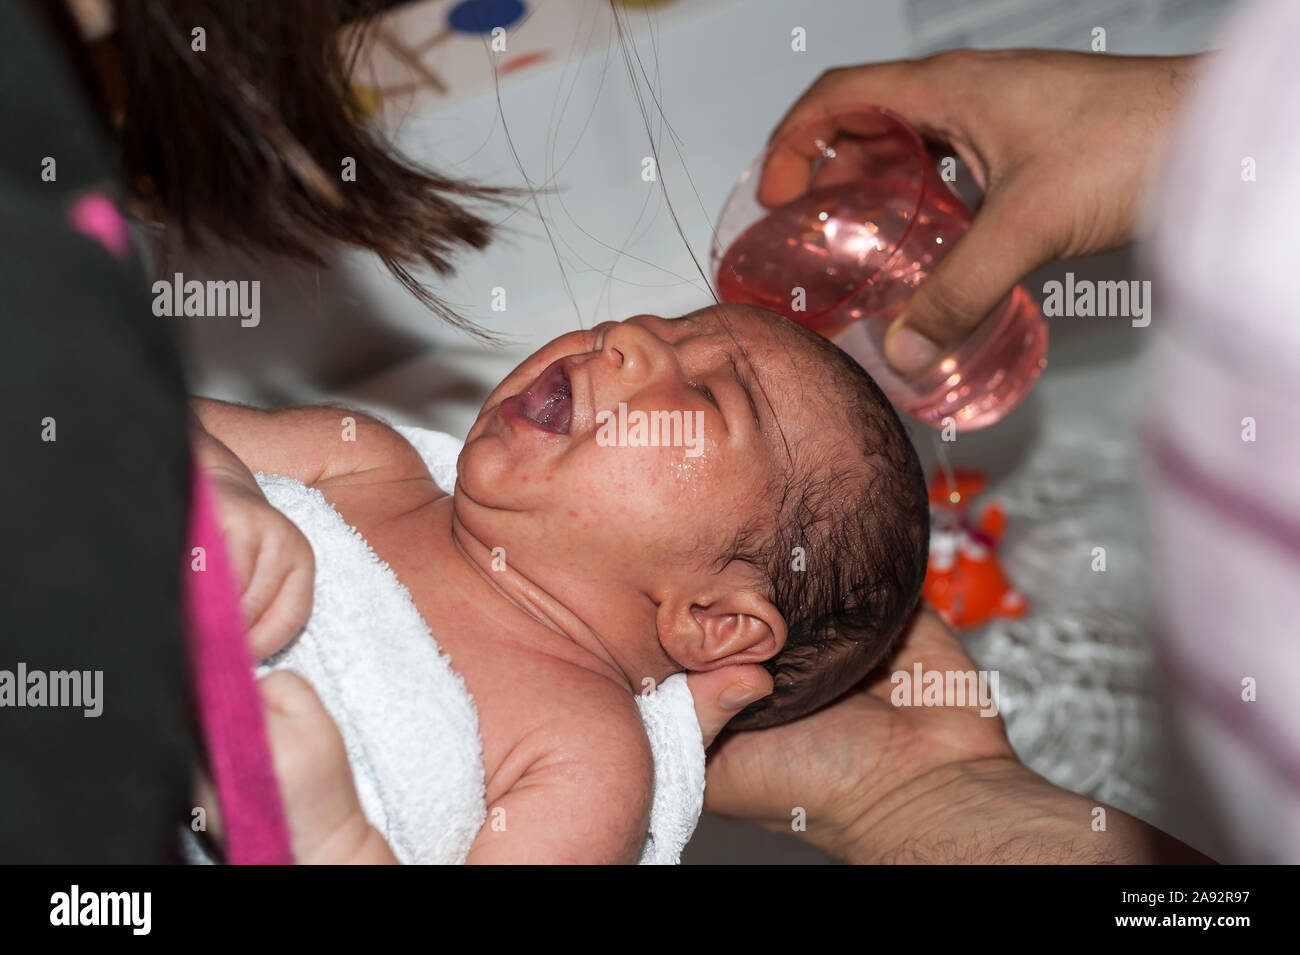 Glas mit Wasser über den Kopf des Weinens zwei Wochen alten Säugling seine Haare zu waschen gegossen wird. Baby gehalten von der Mutter und von der Hand des Vaters holding Glas gewaschen. Stockfoto